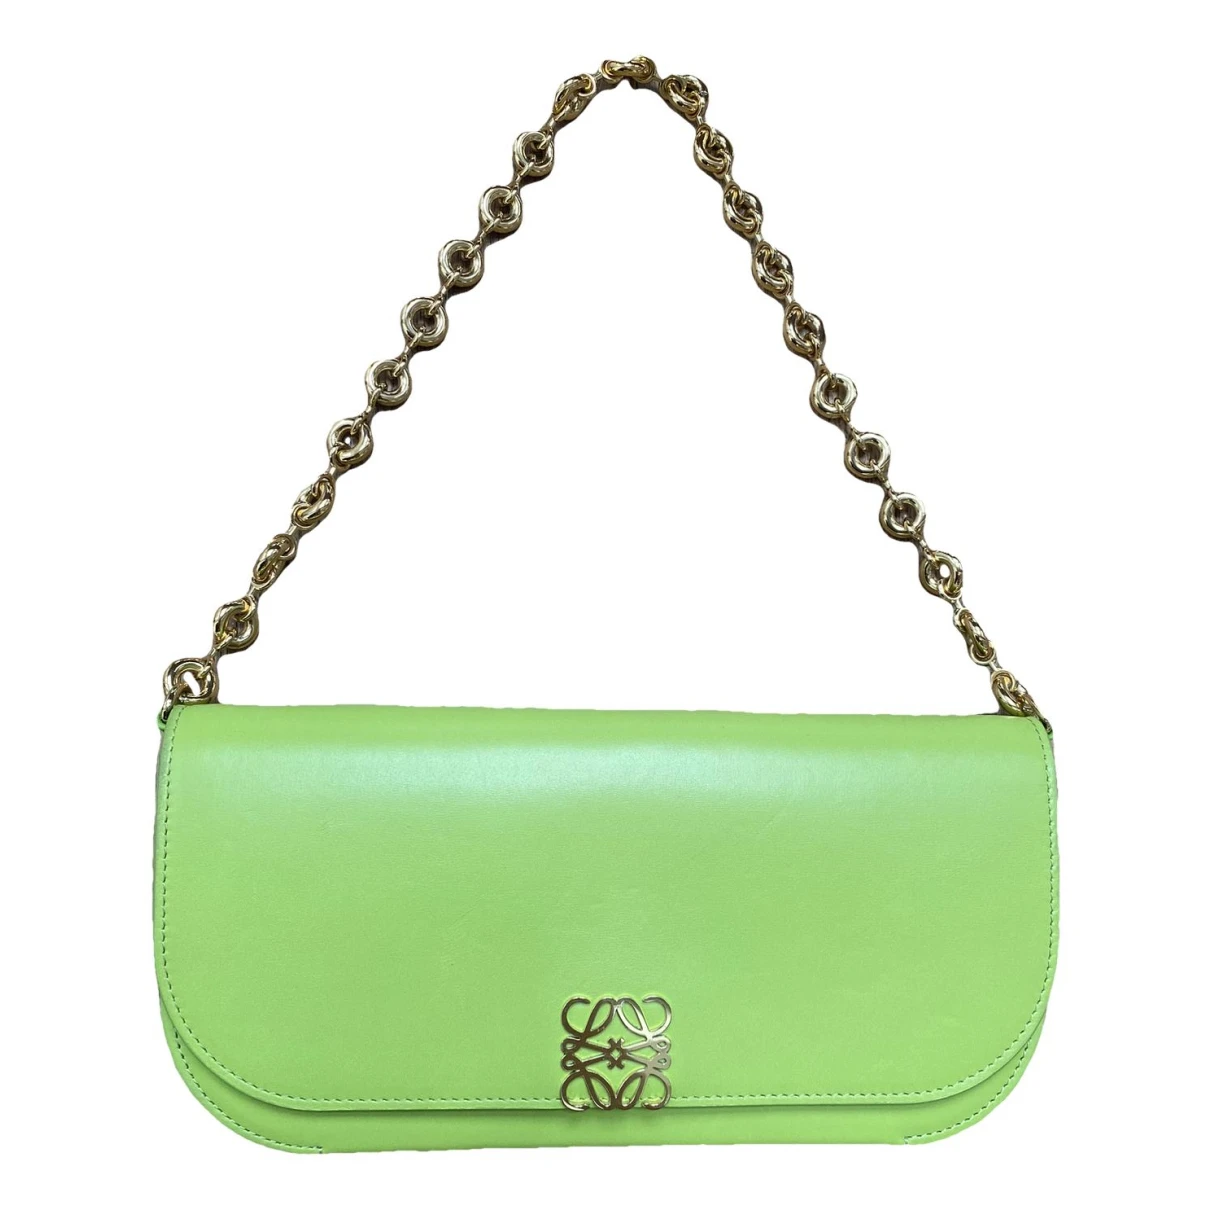 Pre-owned Loewe Goya Leather Handbag In Green